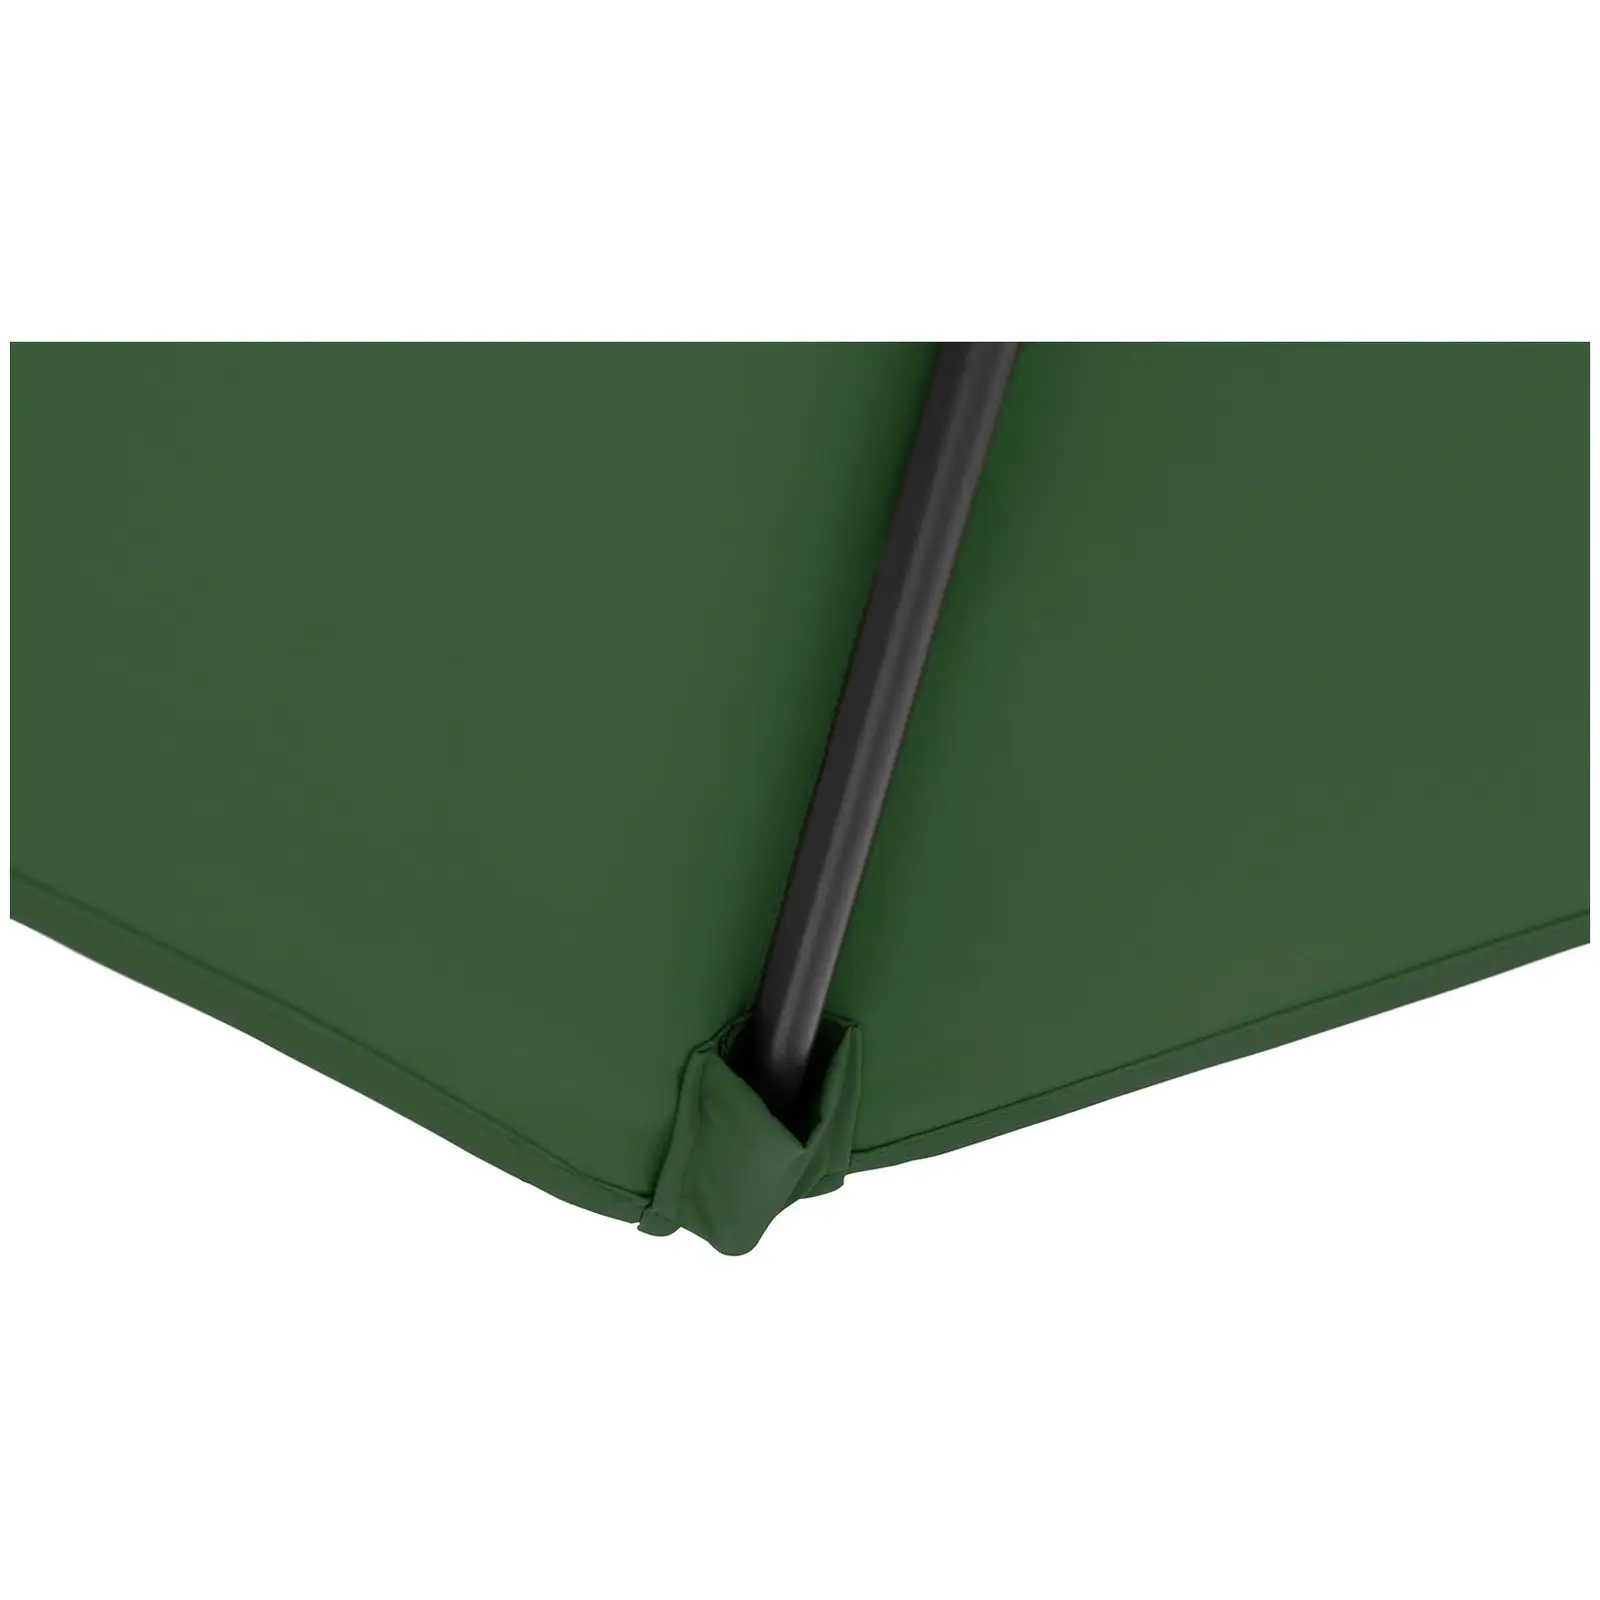 B-zboží Boční slunečník - zelený - čtvercový - 250 x 250 cm - otočný